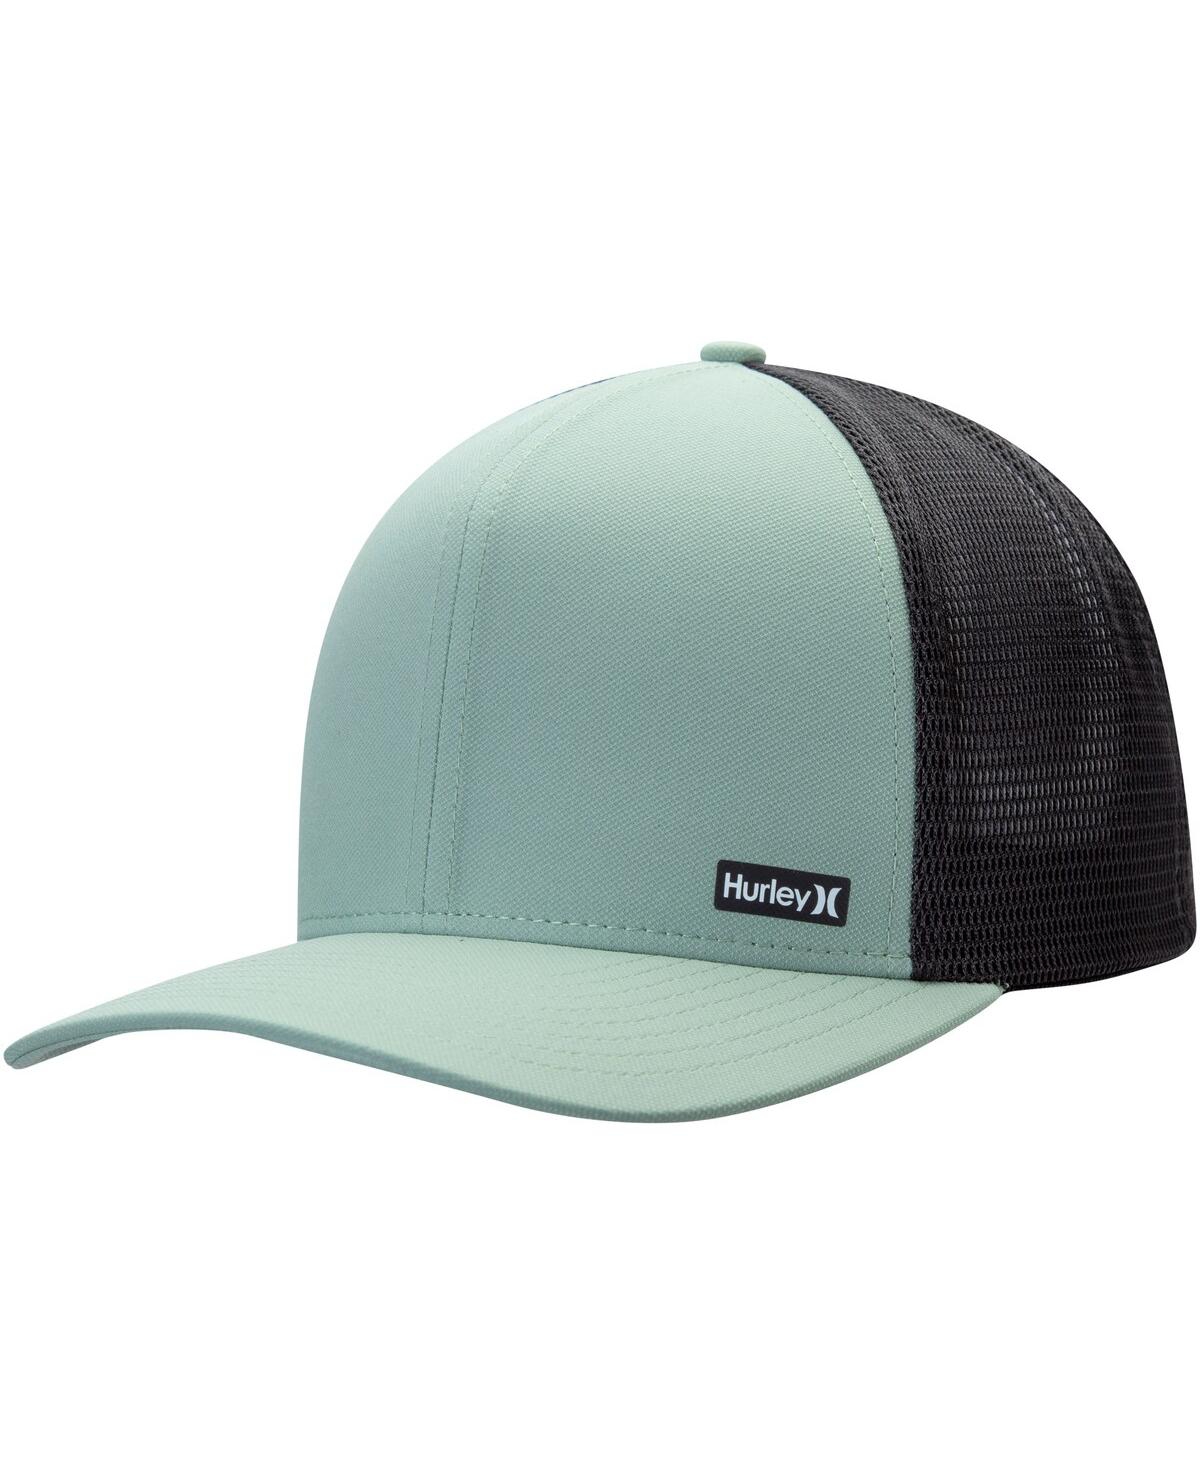 Hurley Men's  Green League Trucker Adjustable Hat